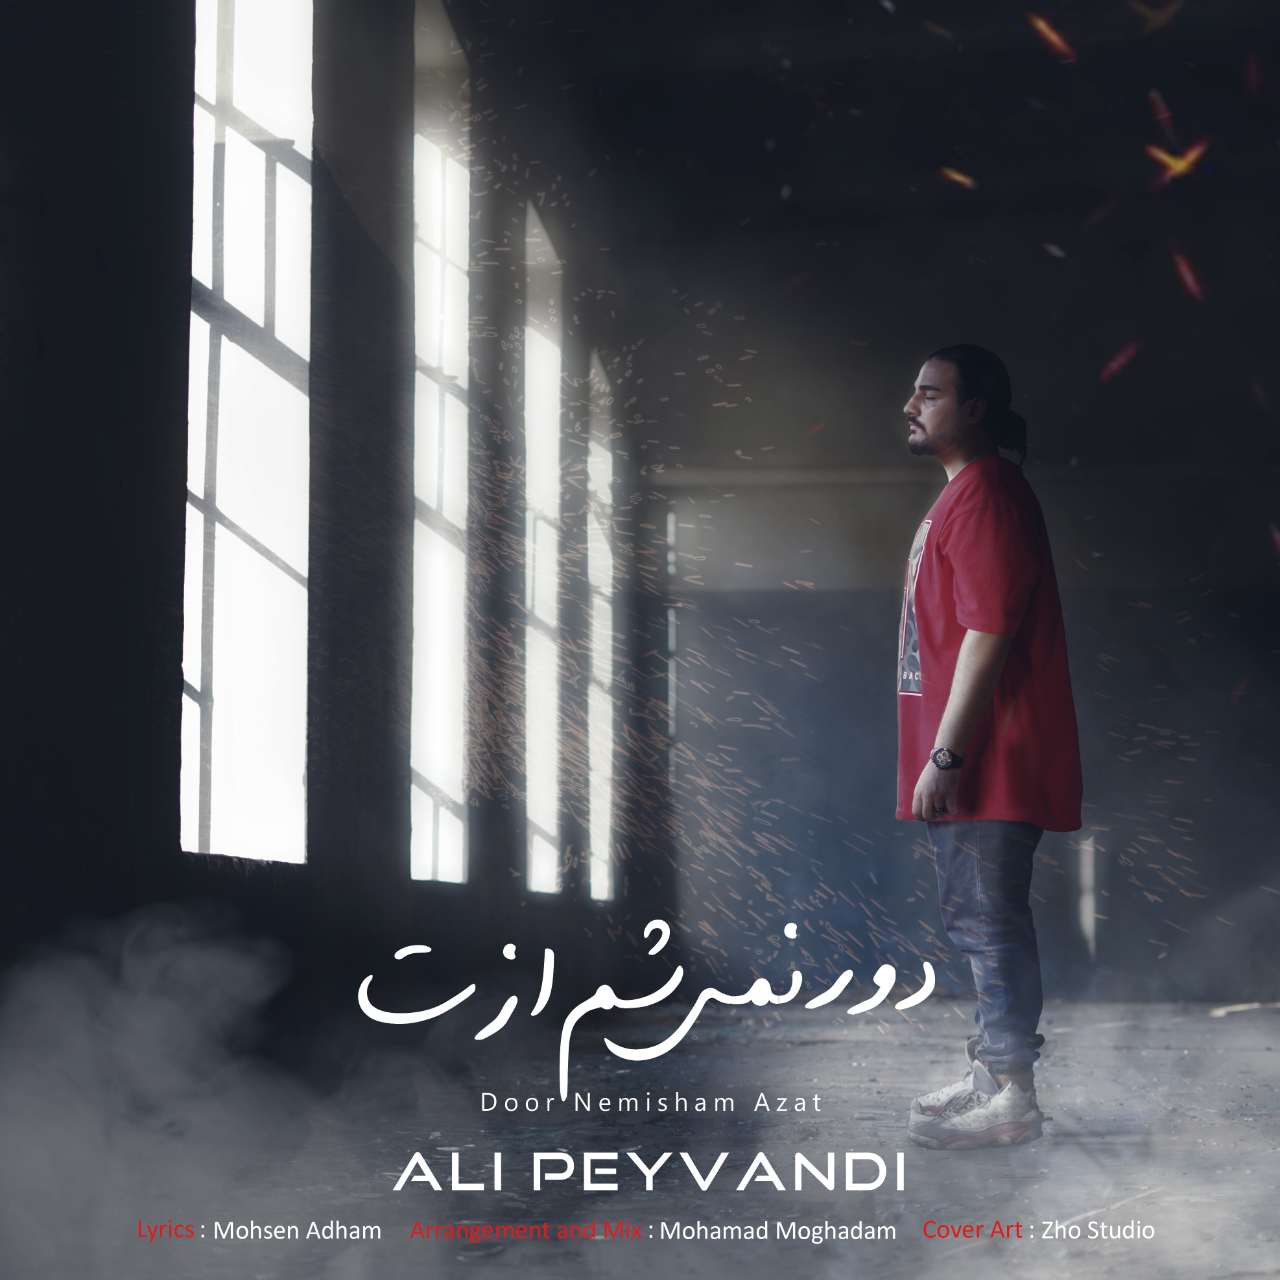 Ali Peyvandi – Door Nemisham Azat